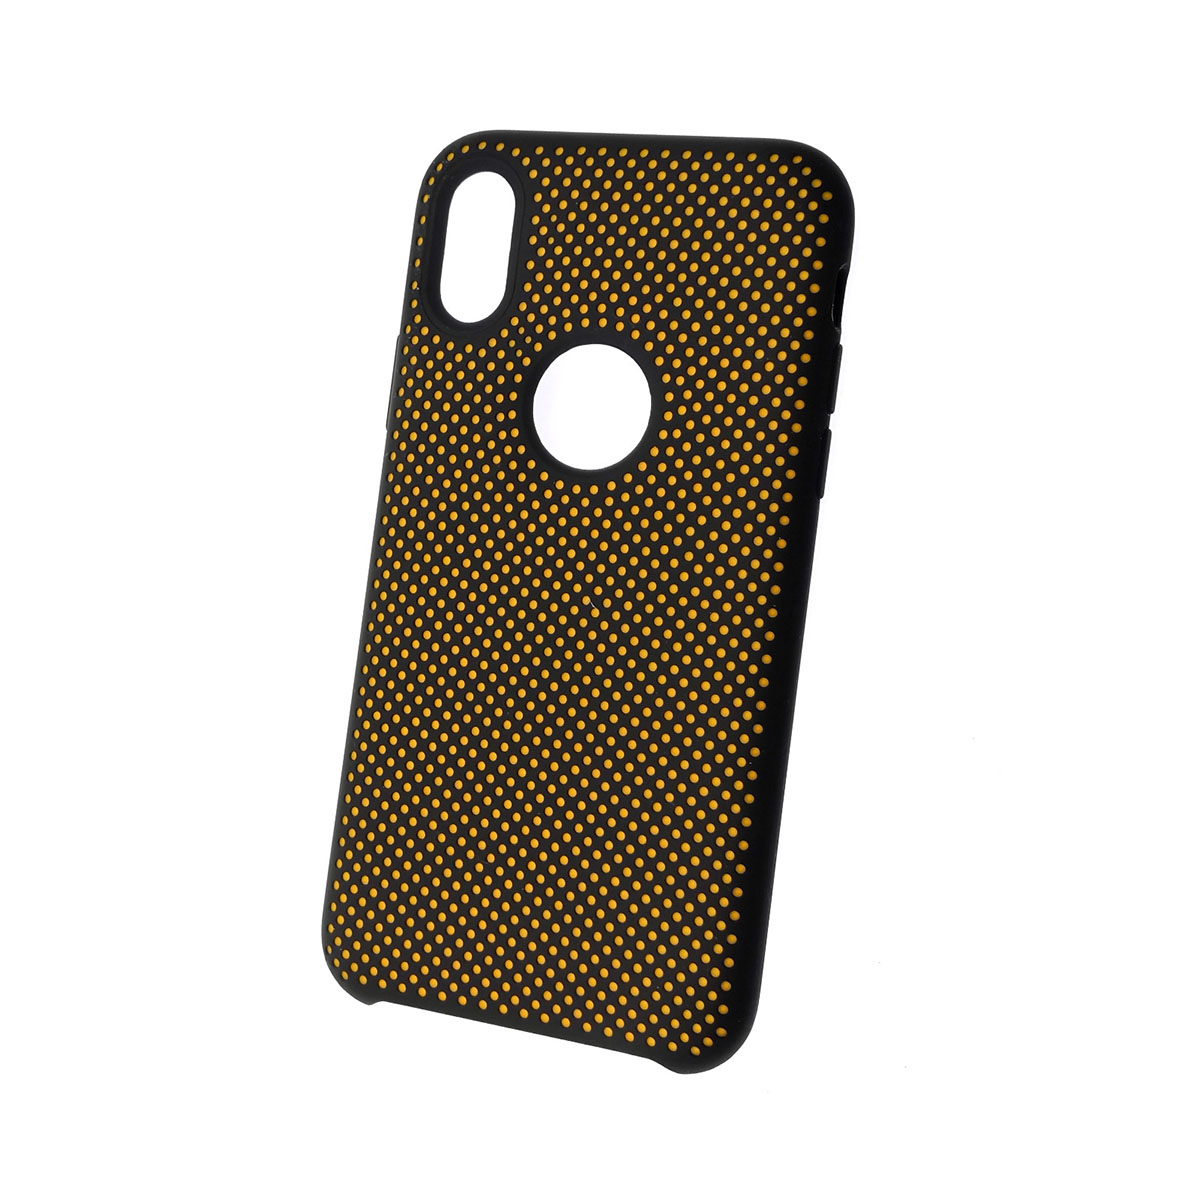 Чехол накладка для APPLE iPhone XS, силикон, пластик, цвет черный c желтым.